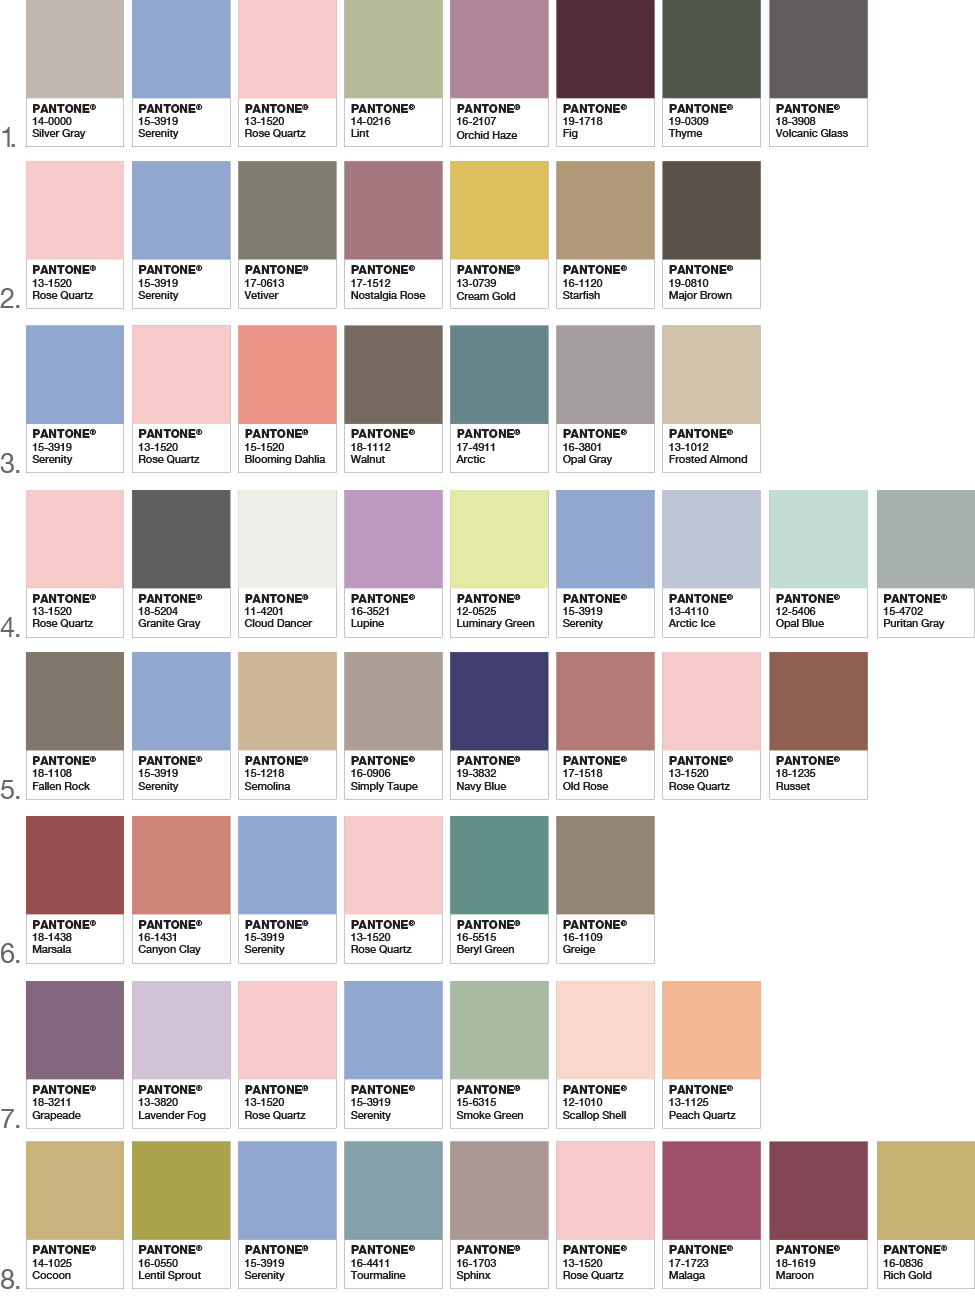 Pantone Color Palette for 2016